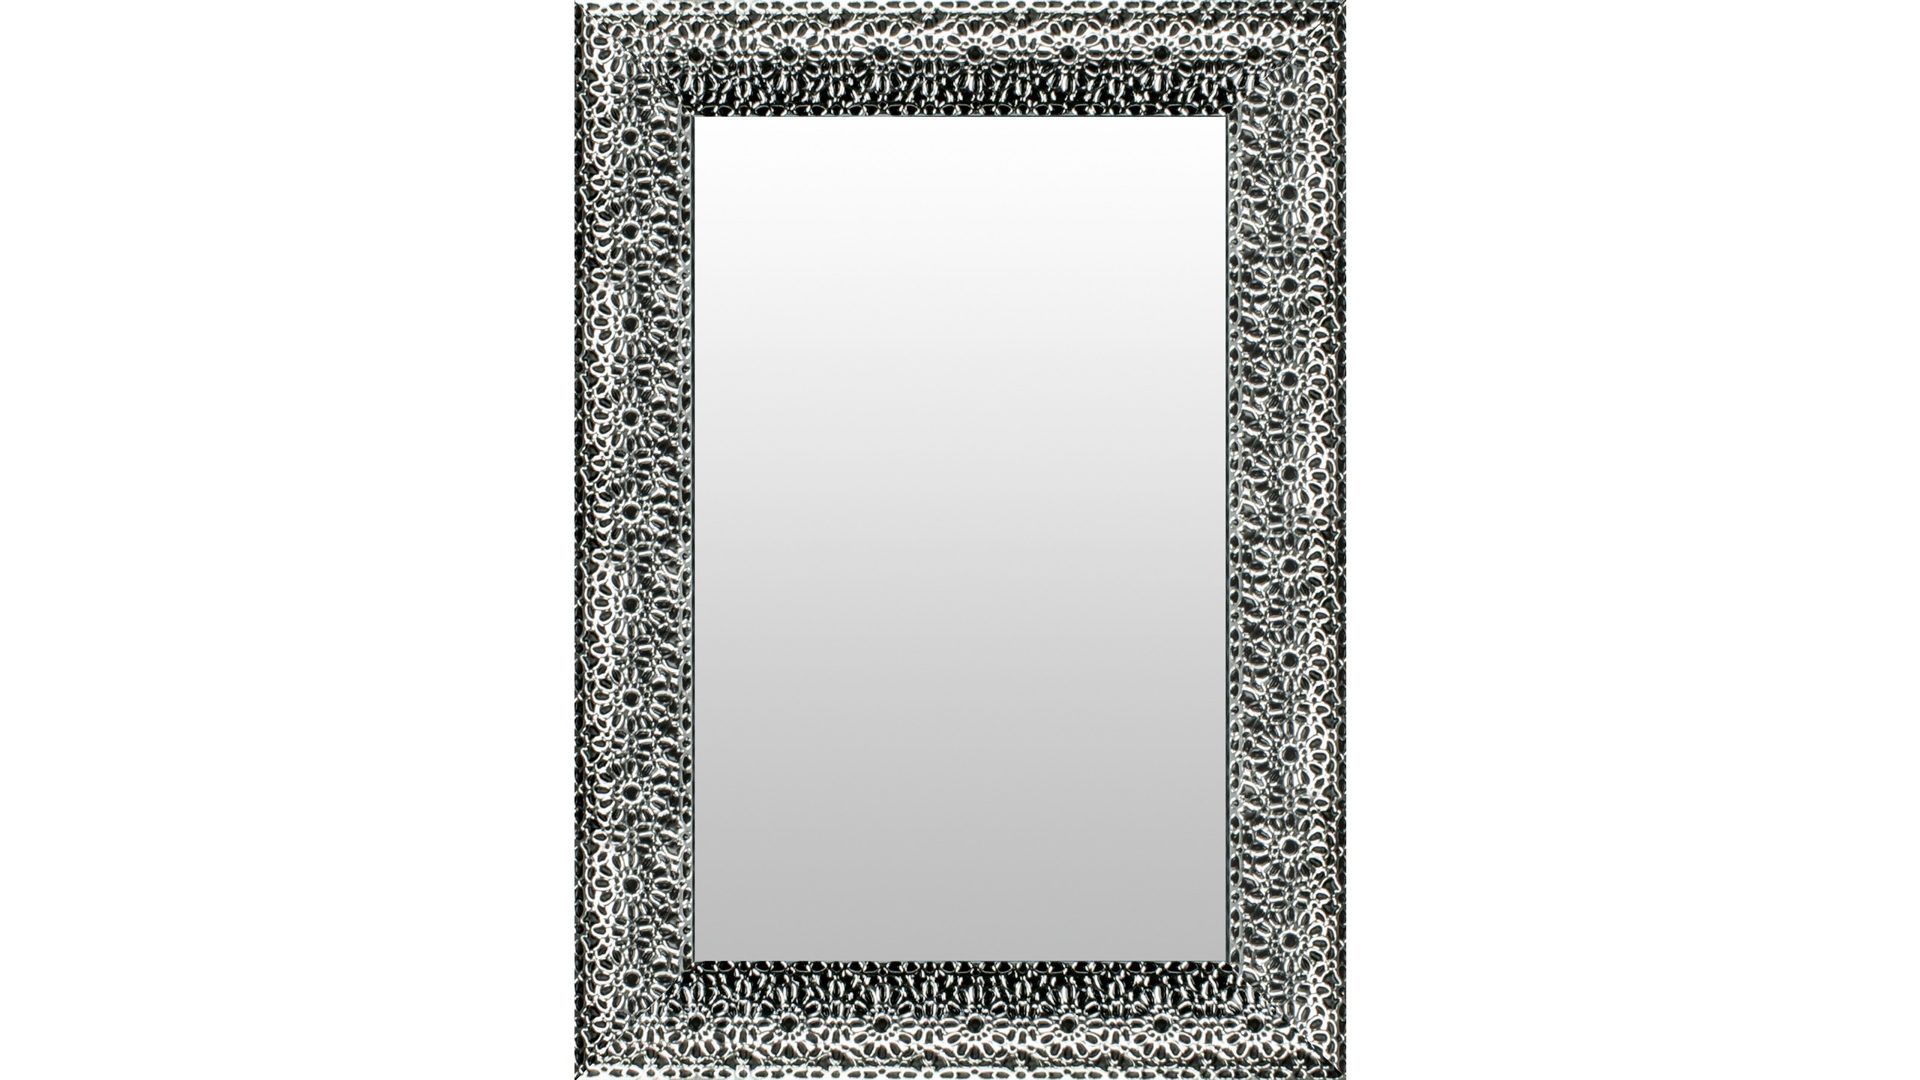 Wandspiegel Len-fra aus Spiegel Kunststoff in Silber Schwarz LEN-FRA Wandspiegel Garderobenspiegel DUNKERQUE 03 ca. 87 x 137 cm, Rahmen Blume silber schwarz